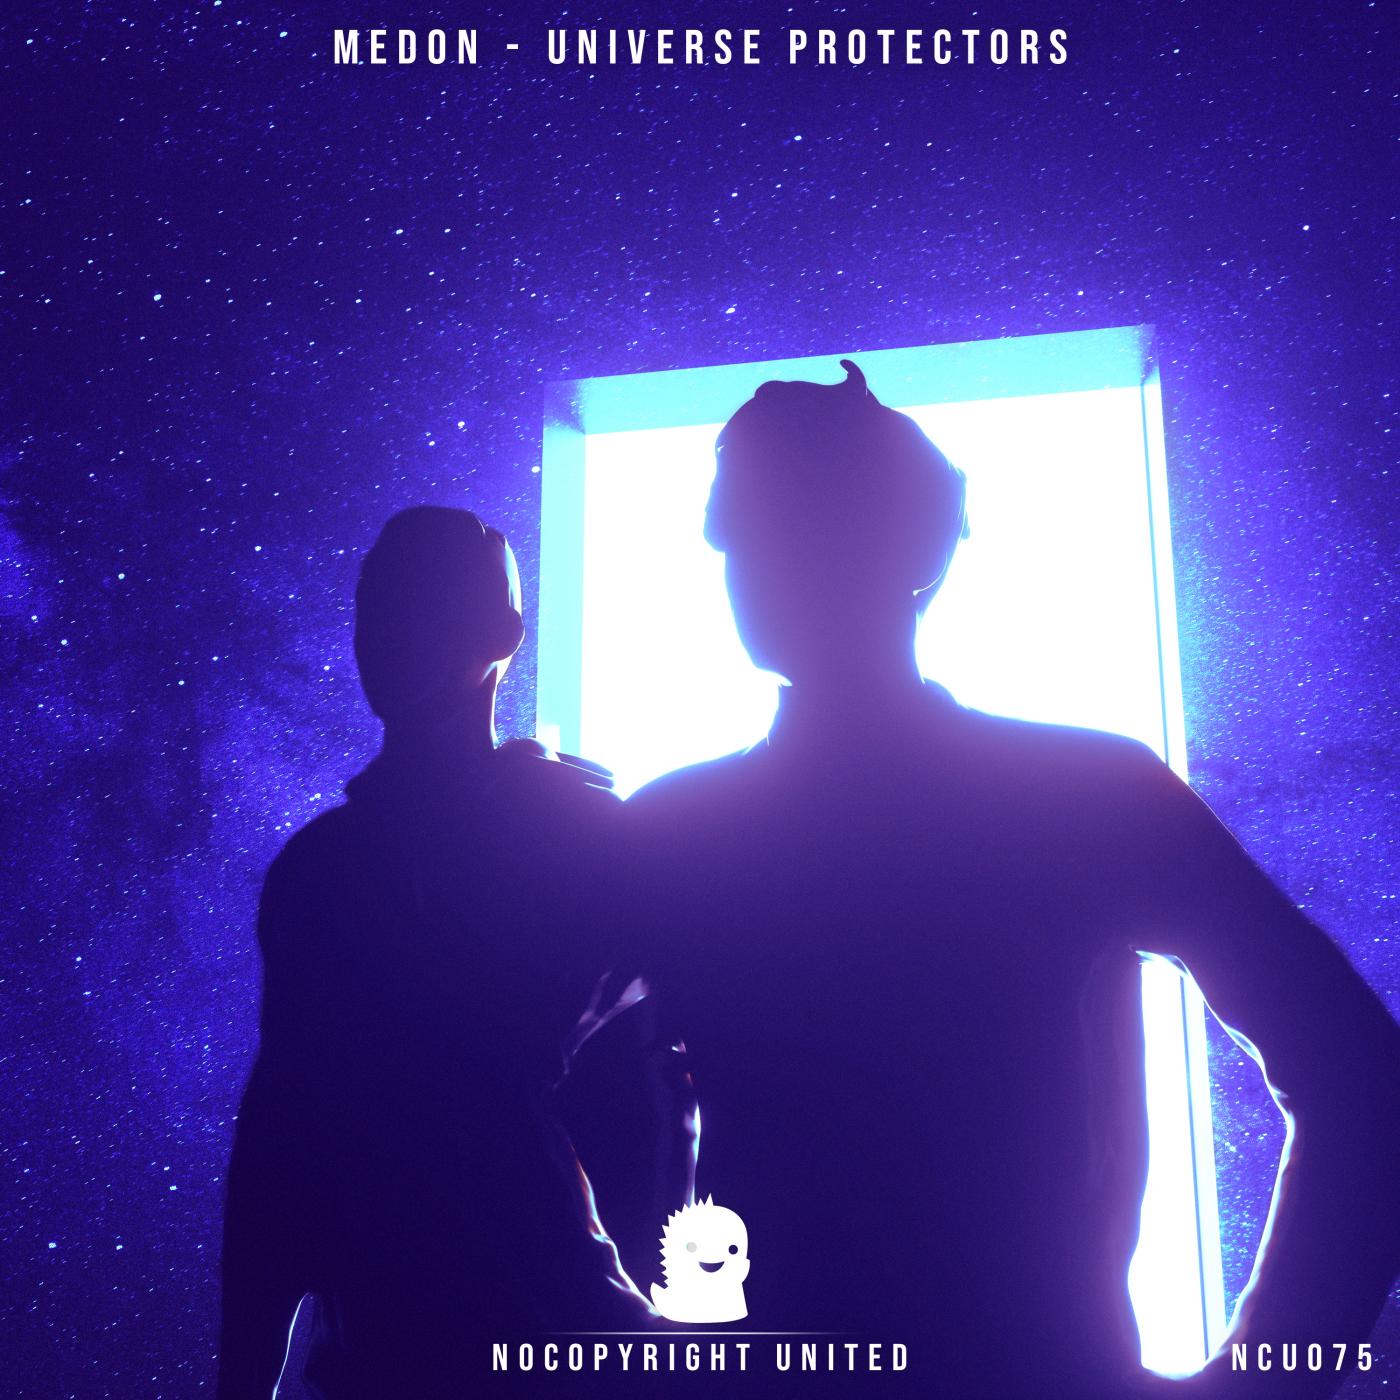 Universe Protectors